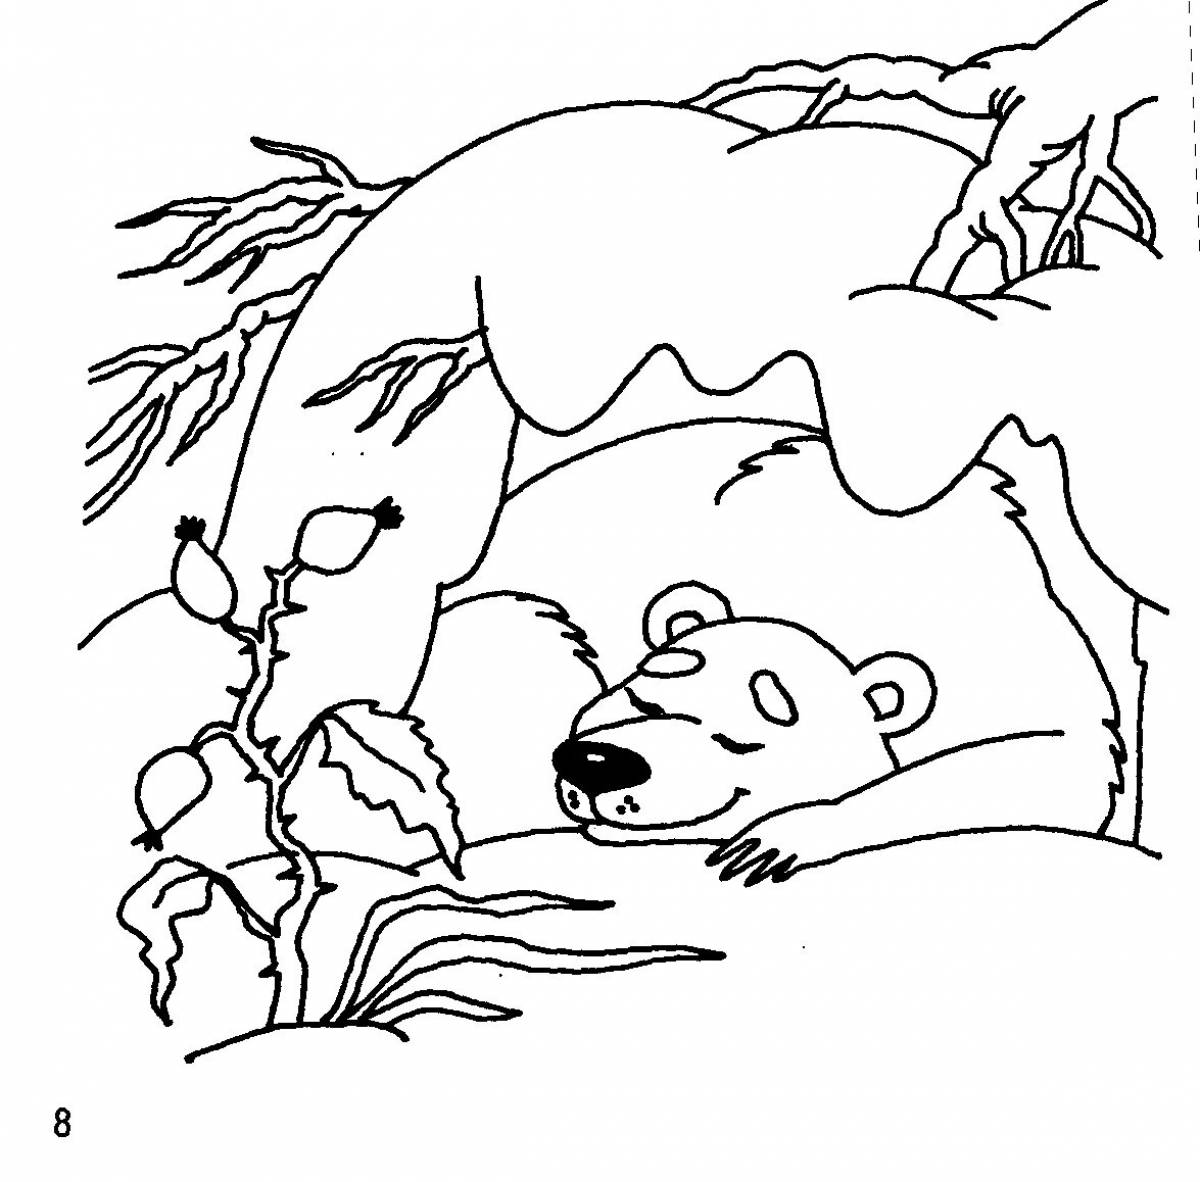 Медведь спит в берлоге для детей #7